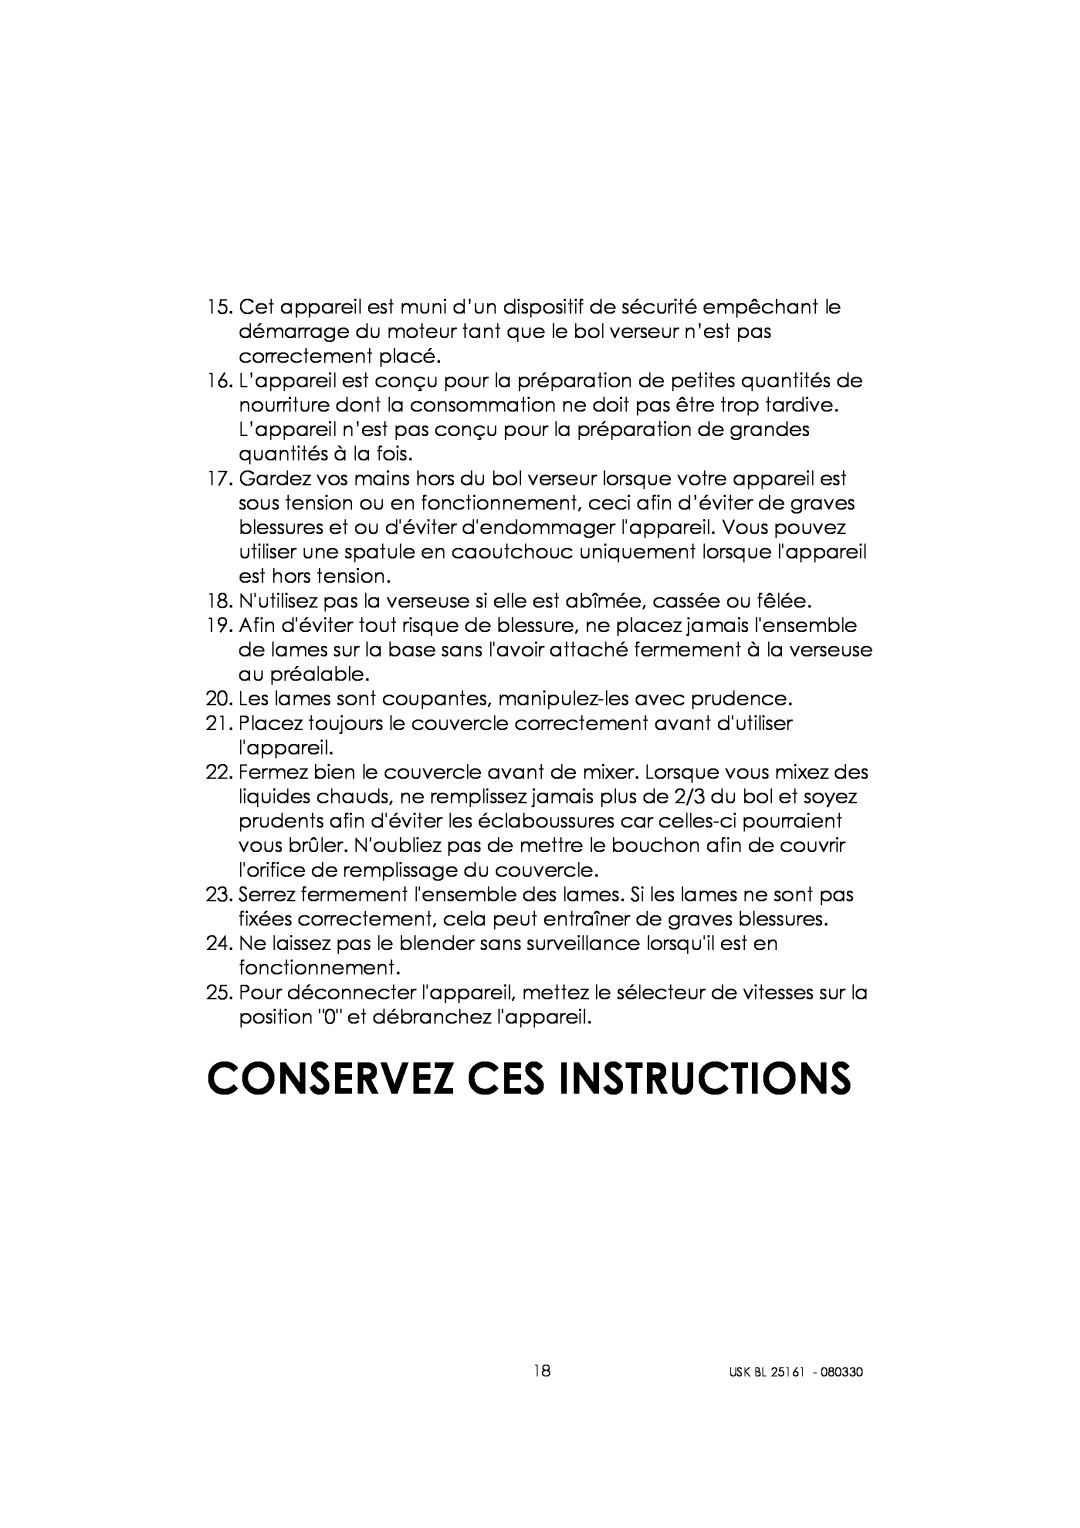 Kalorik usk bl 25161 manual Conservez Ces Instructions 